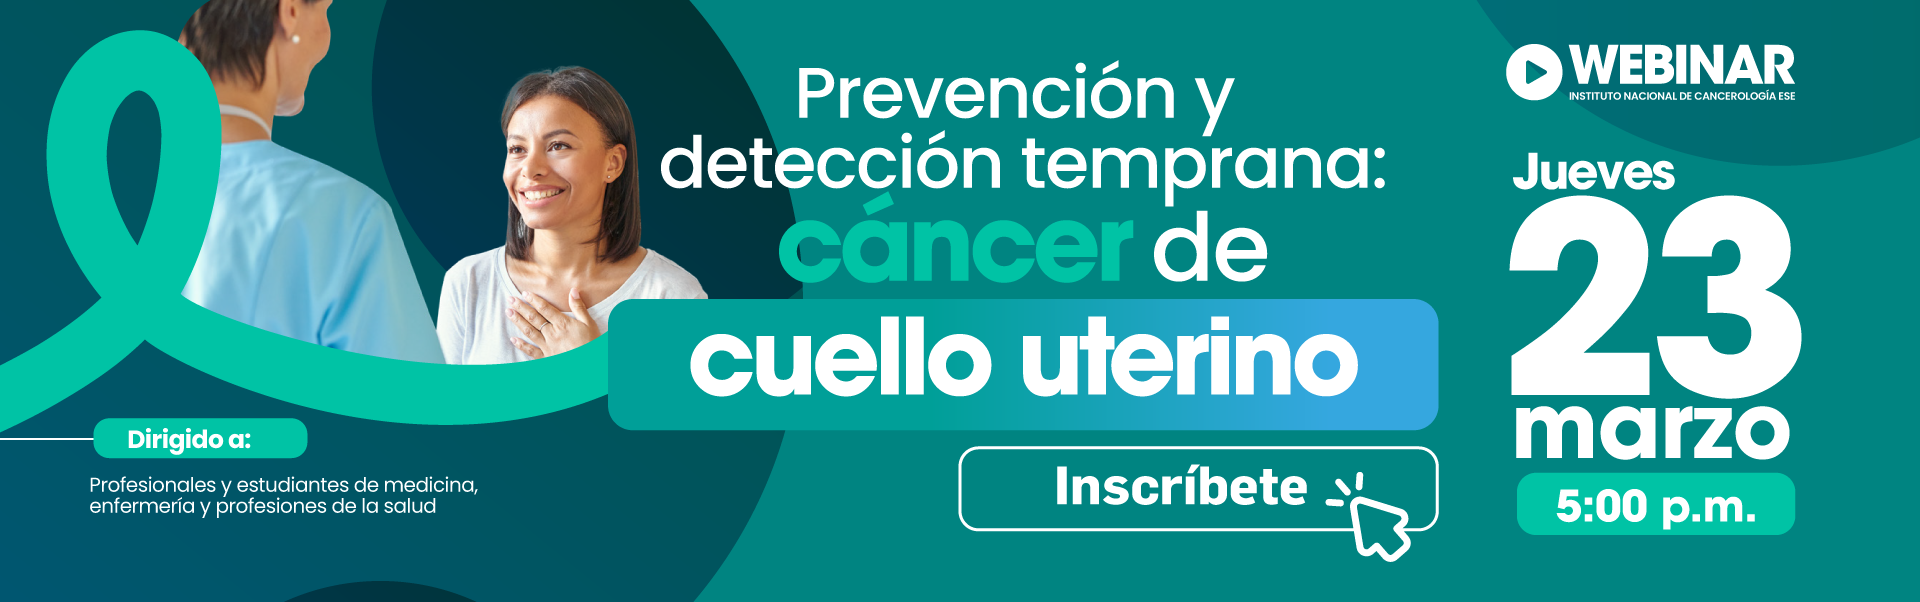 Imagen de Webinar sobre prevención y detección de cáncer de cuello uterino